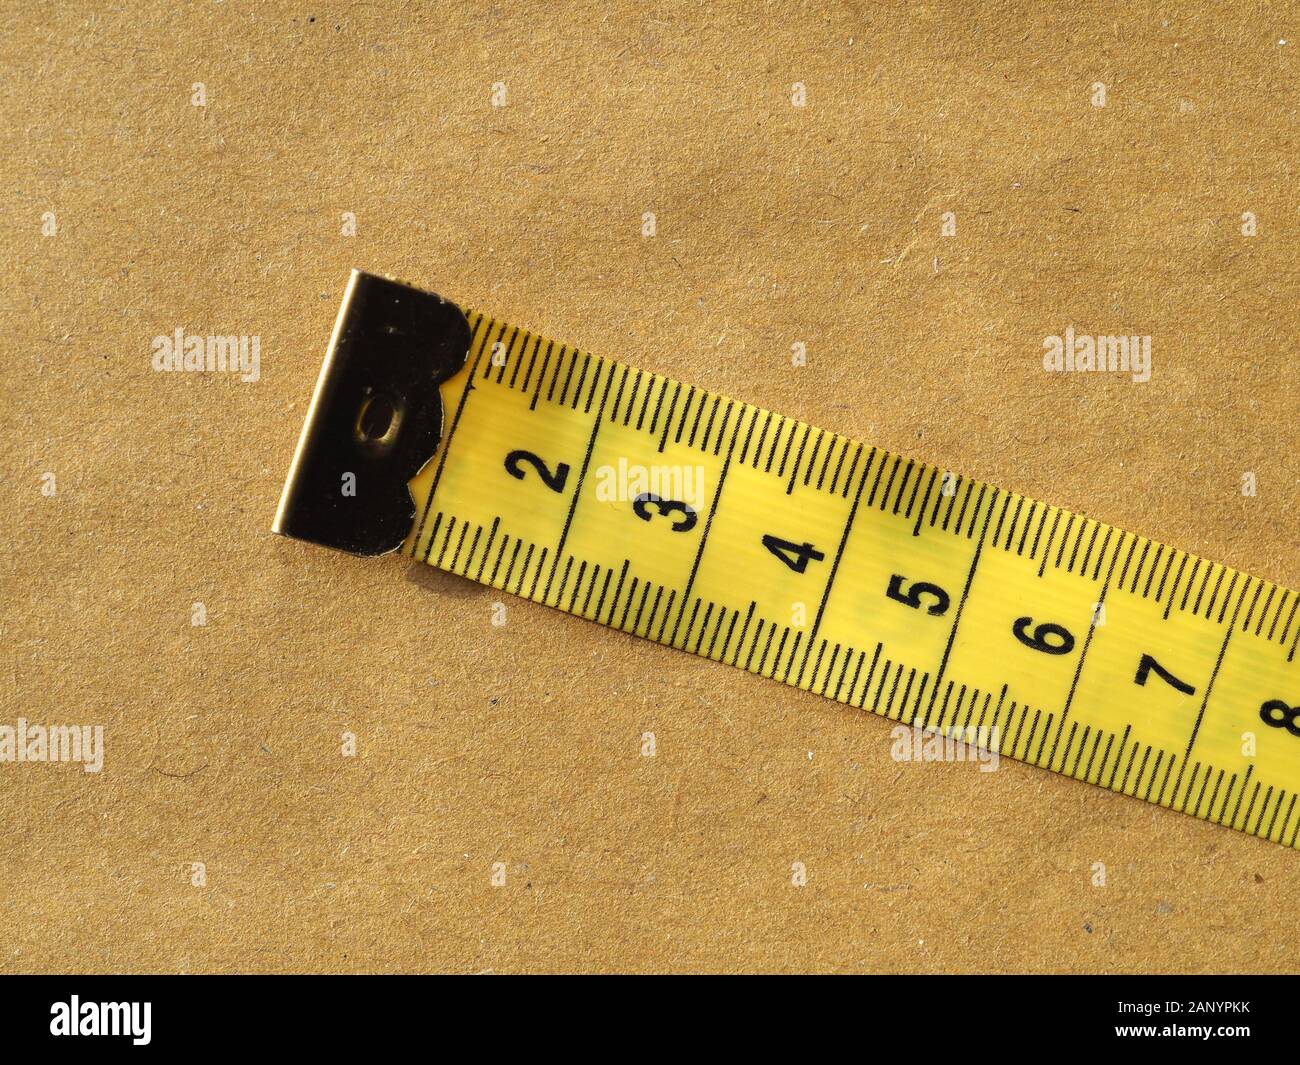 https://c8.alamy.com/comp/2ANYPKK/metric-measuring-tape-flexible-ruler-ribbon-for-tailoring-2ANYPKK.jpg